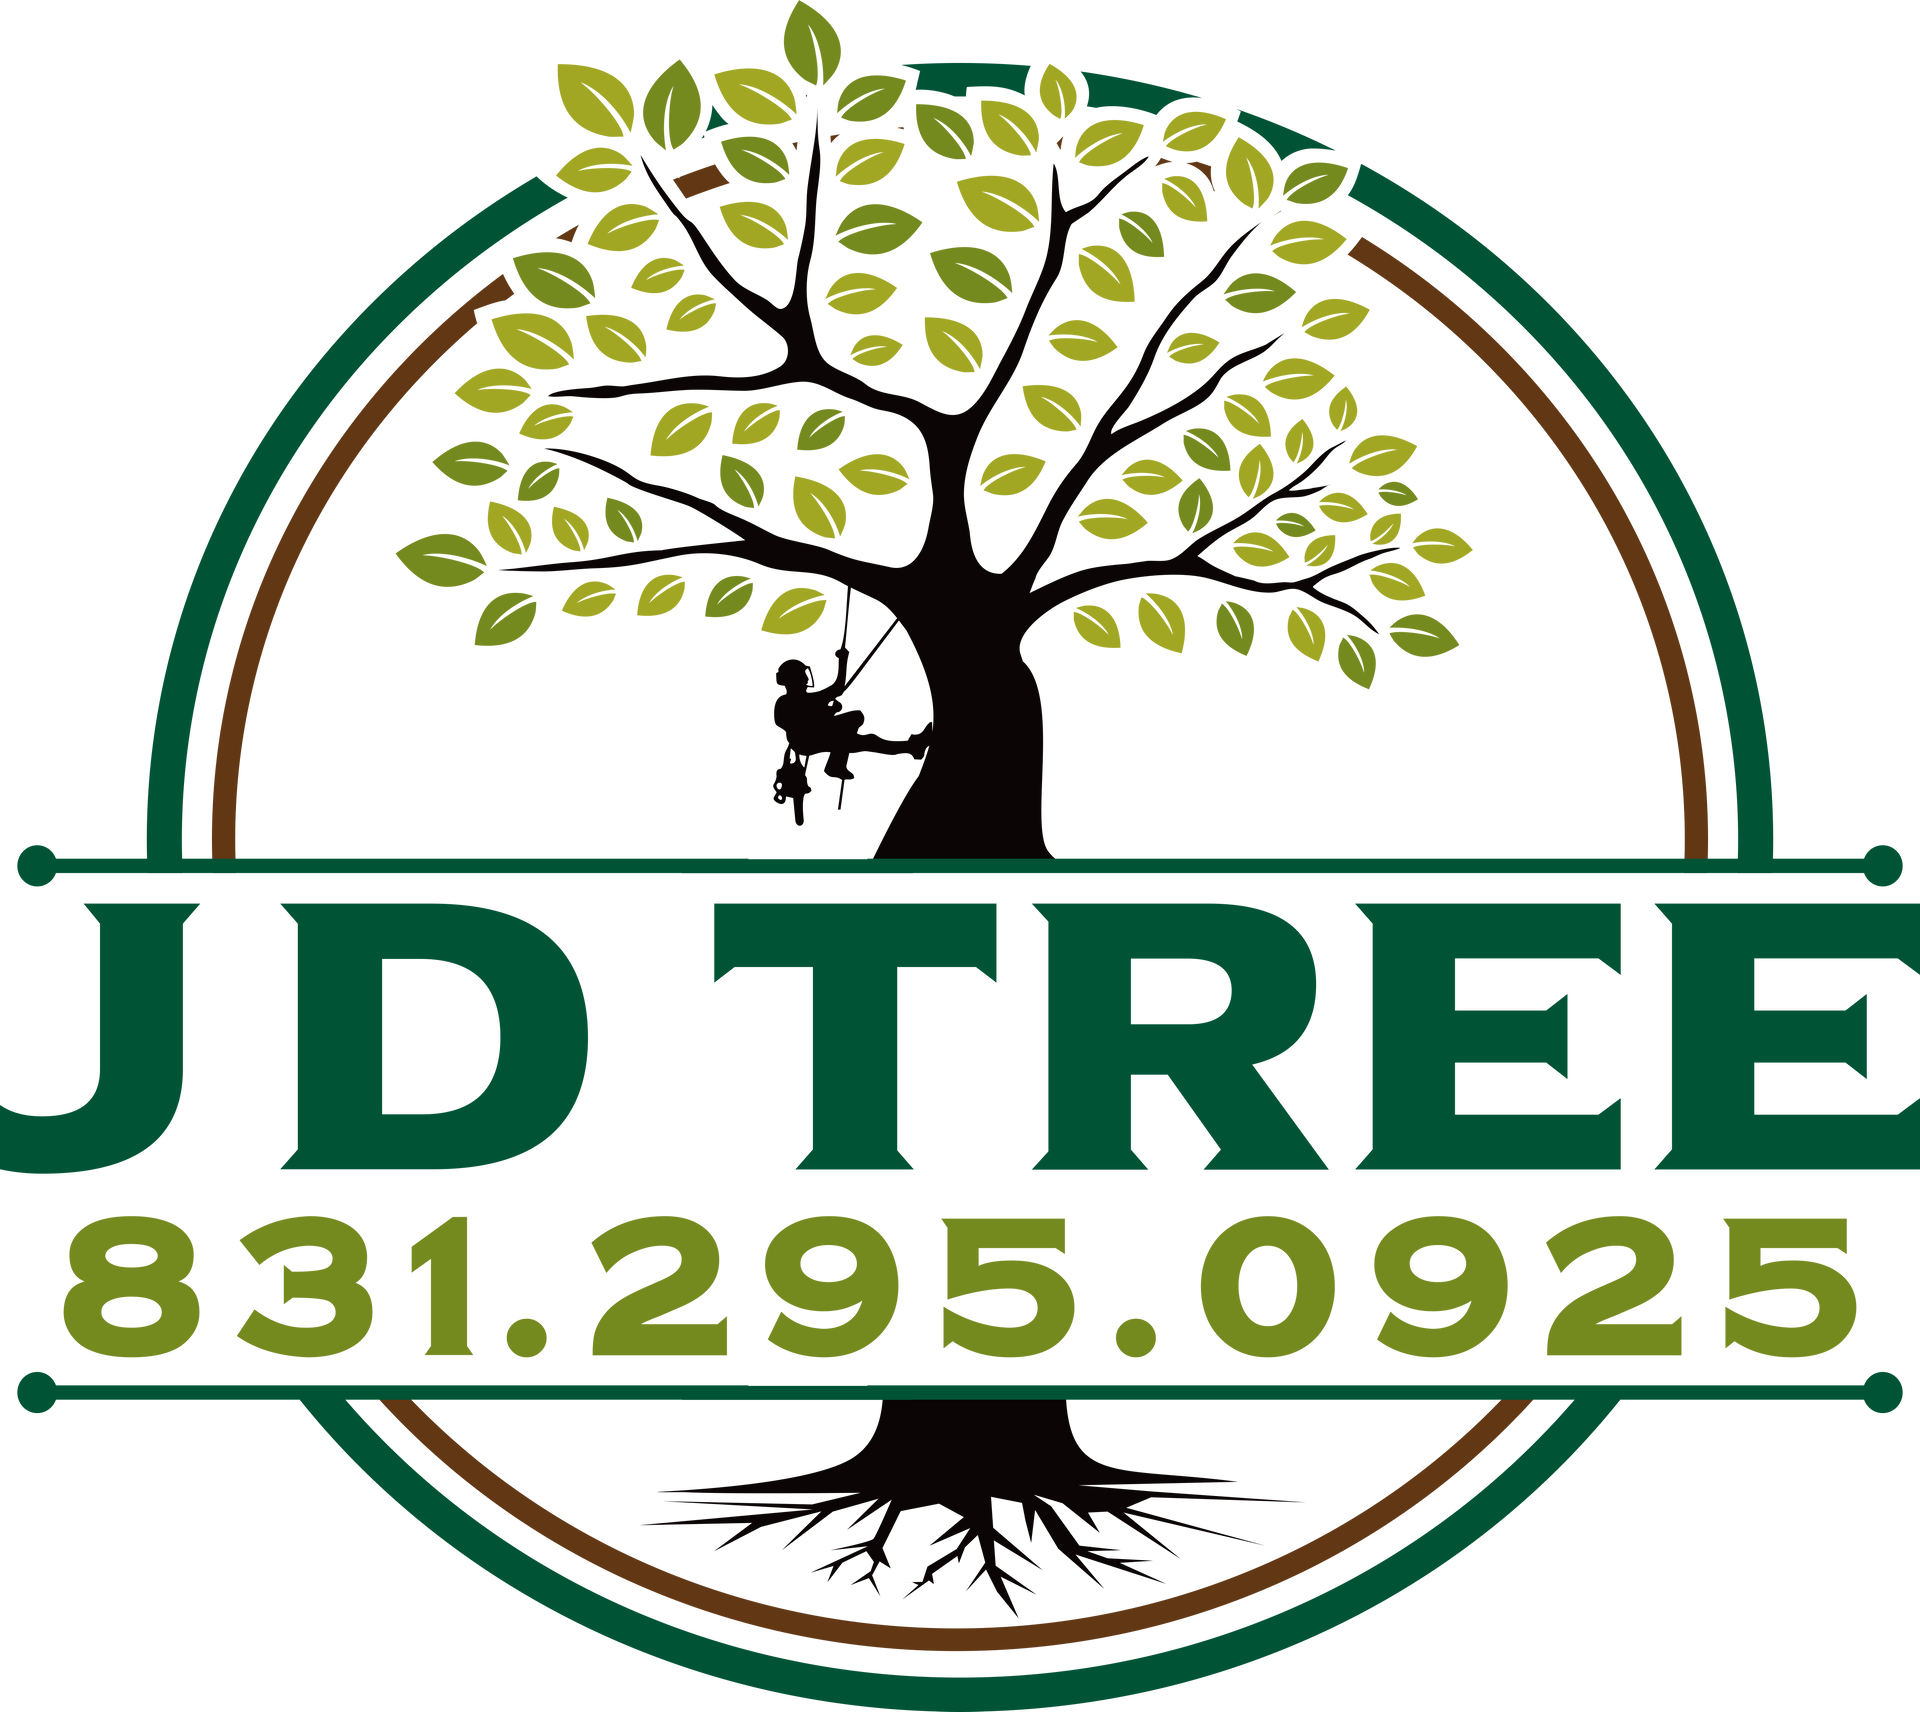 JD Tree